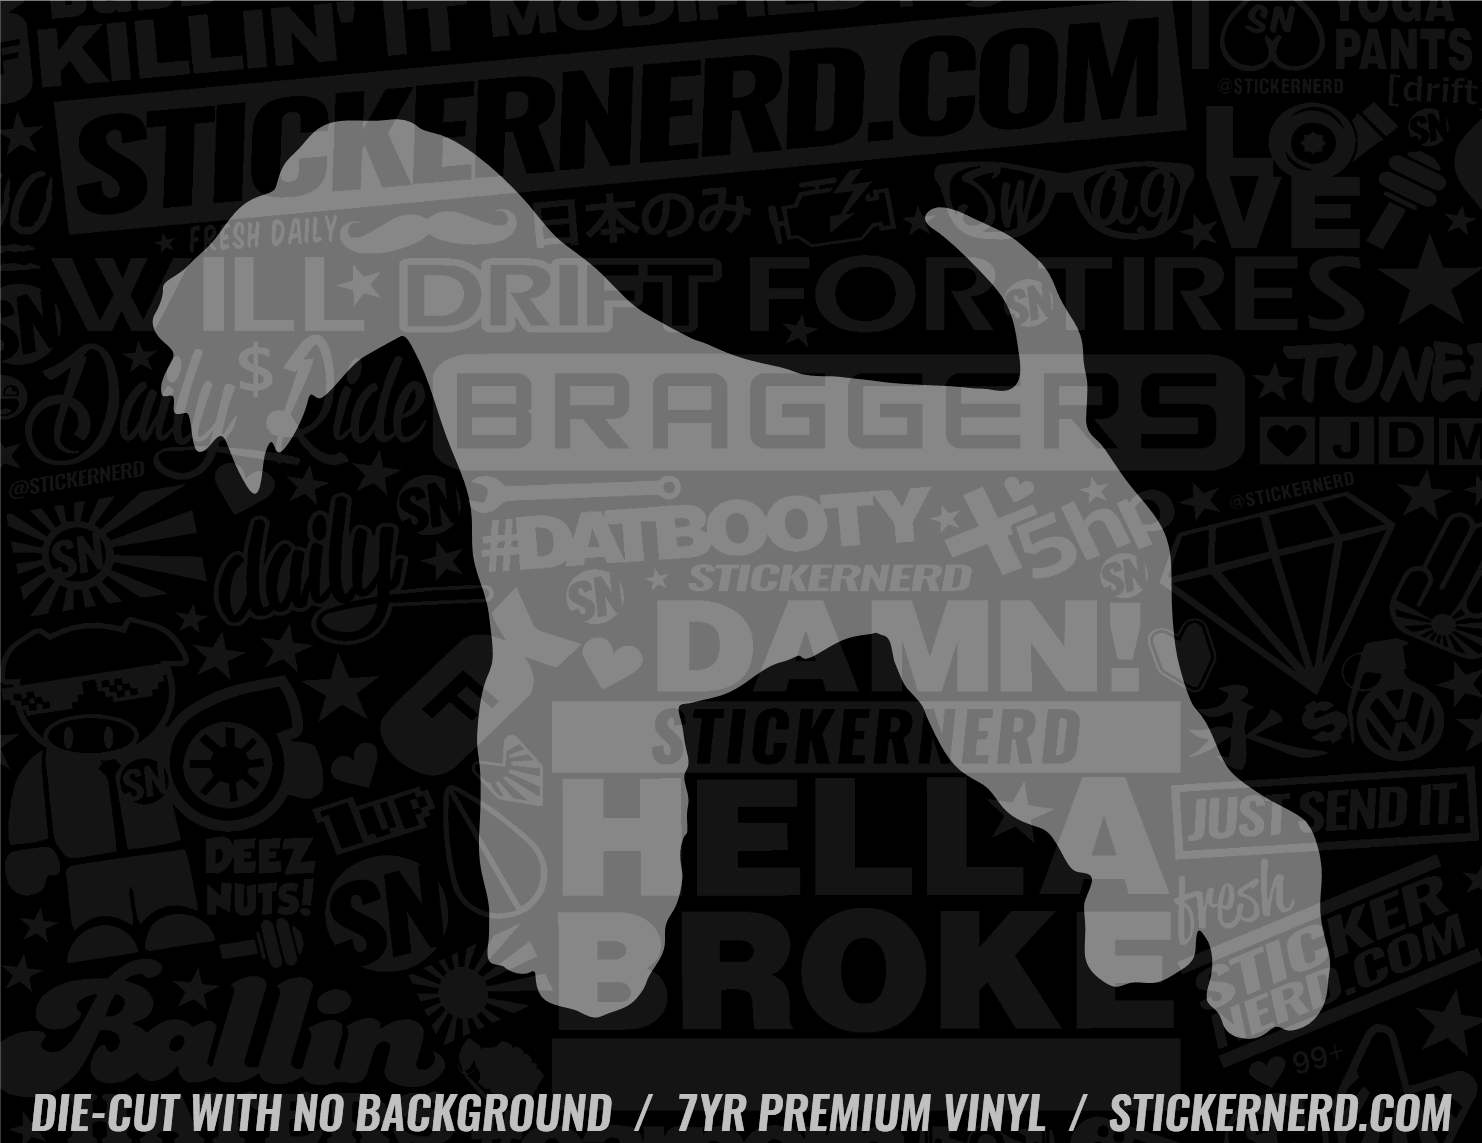 Lakeland Terrier Dog Sticker - Window Decal - STICKERNERD.COM